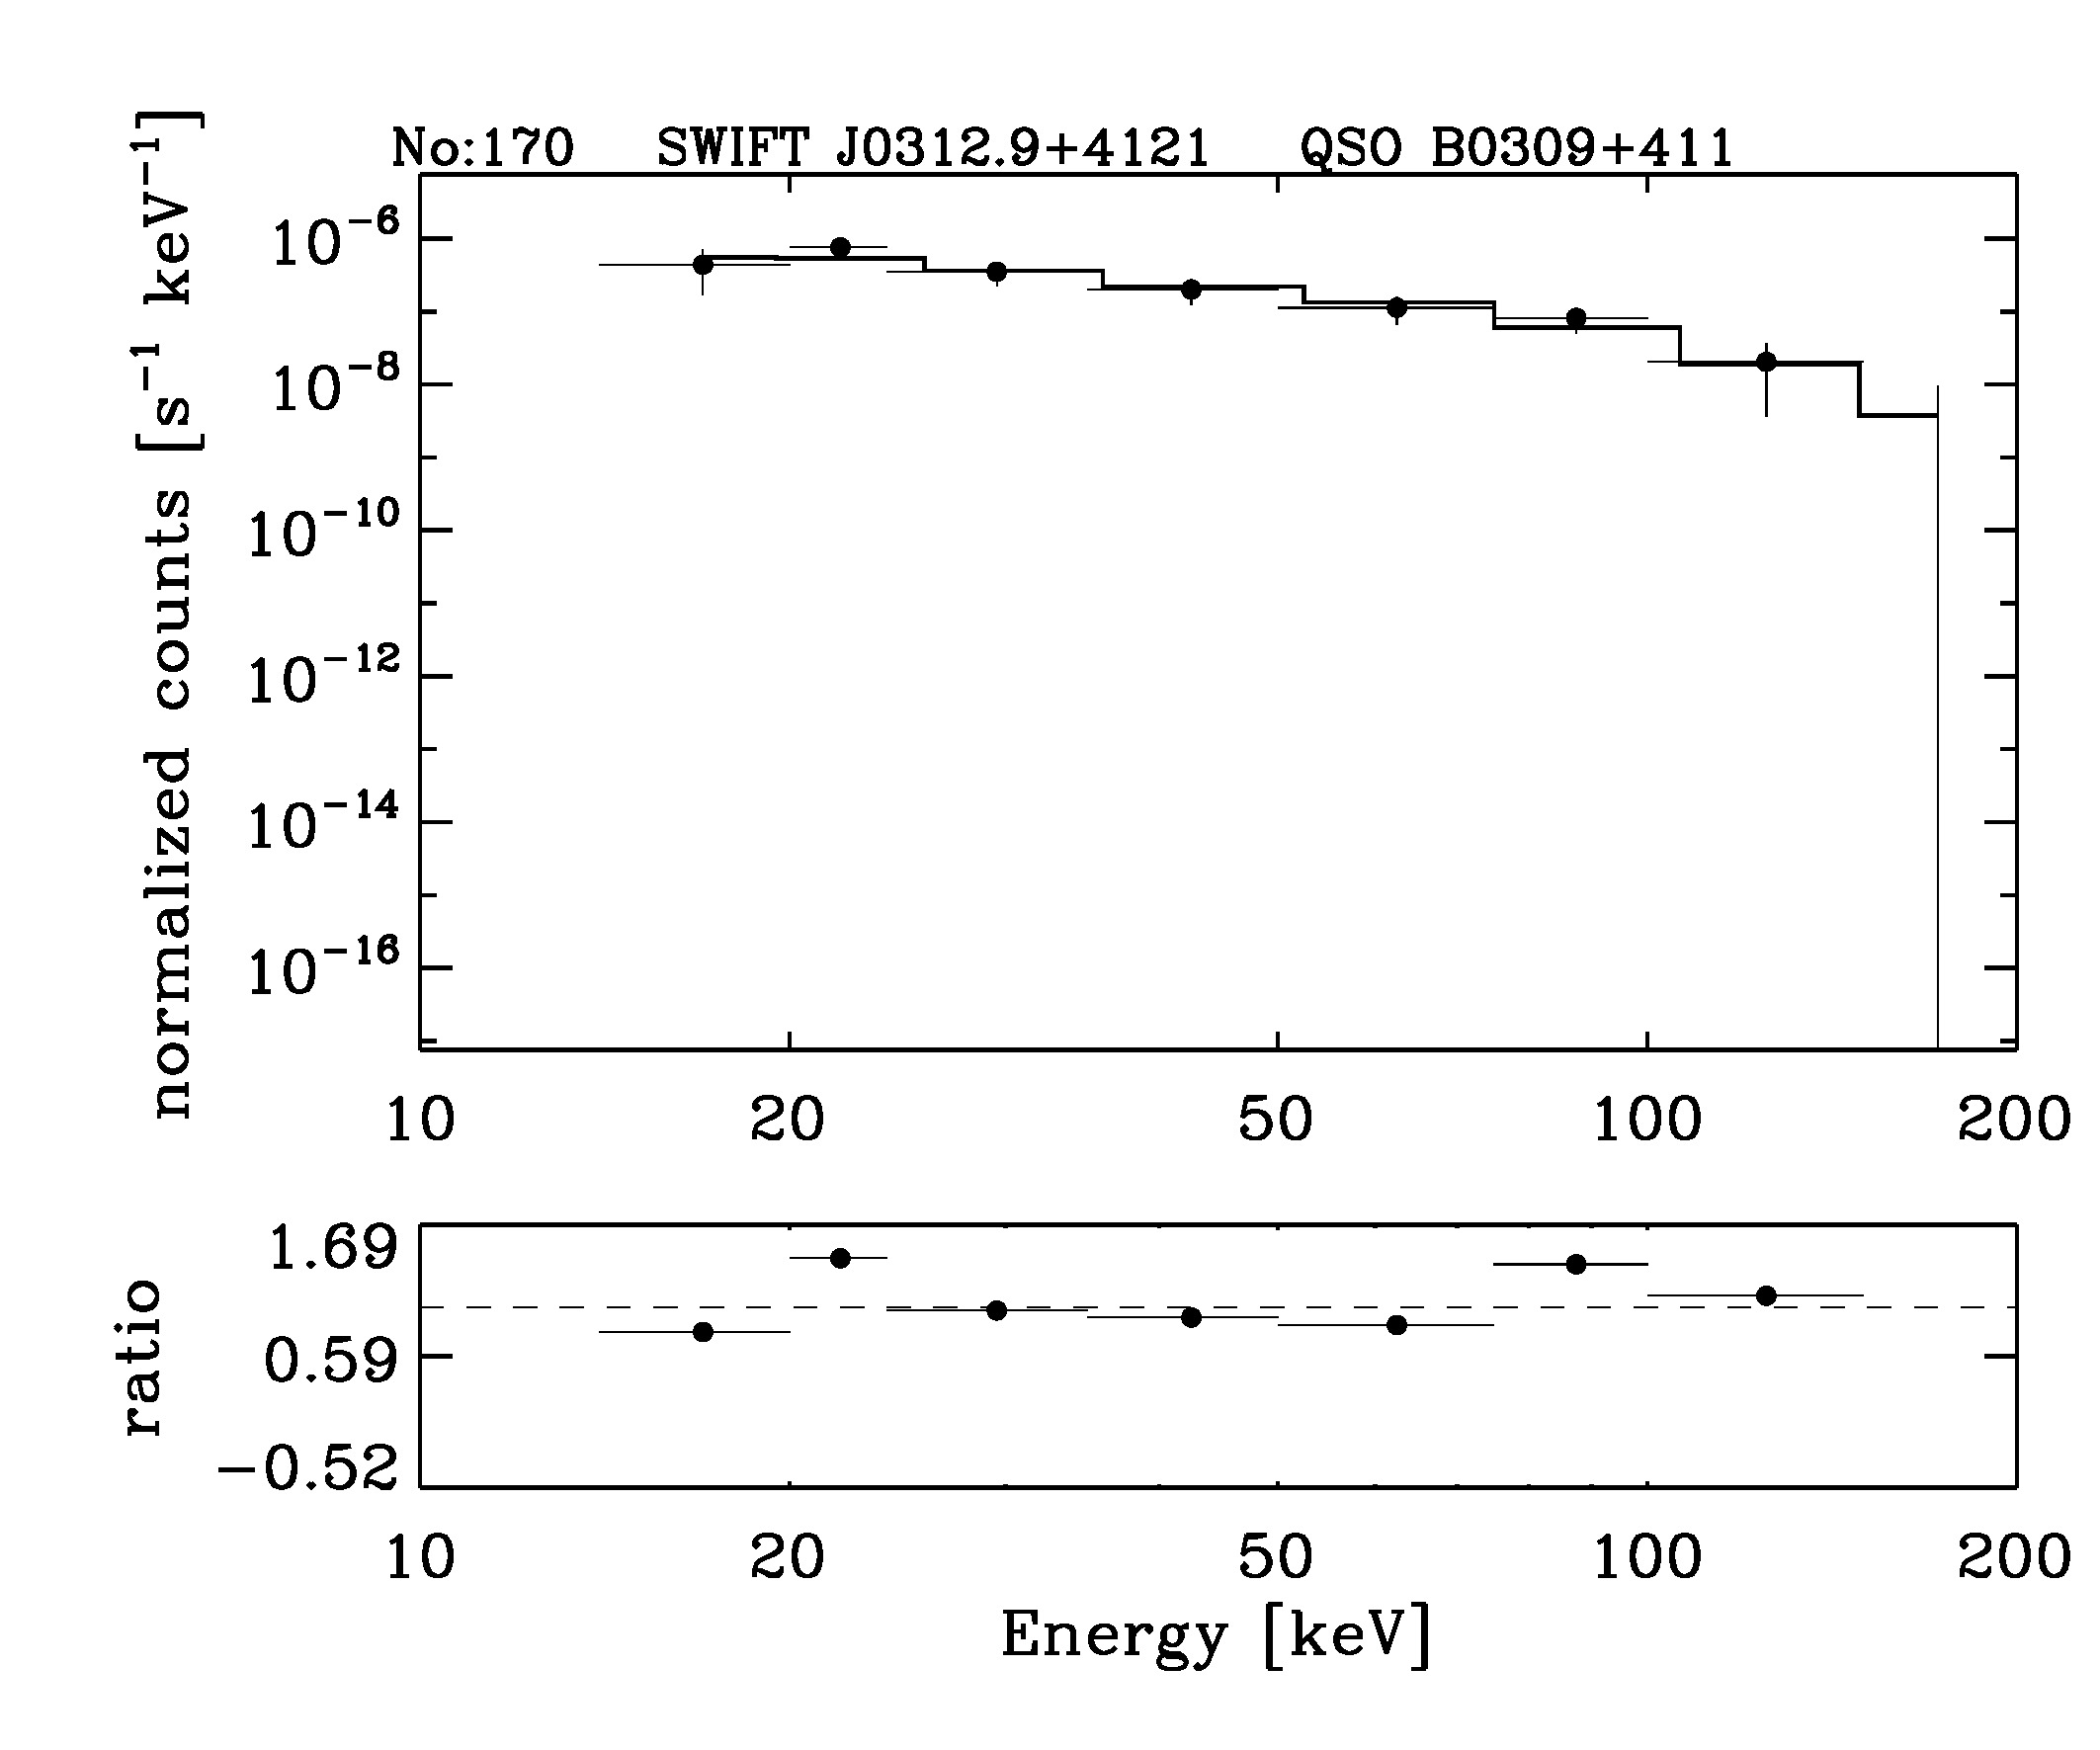 BAT Spectrum for SWIFT J0312.9+4121